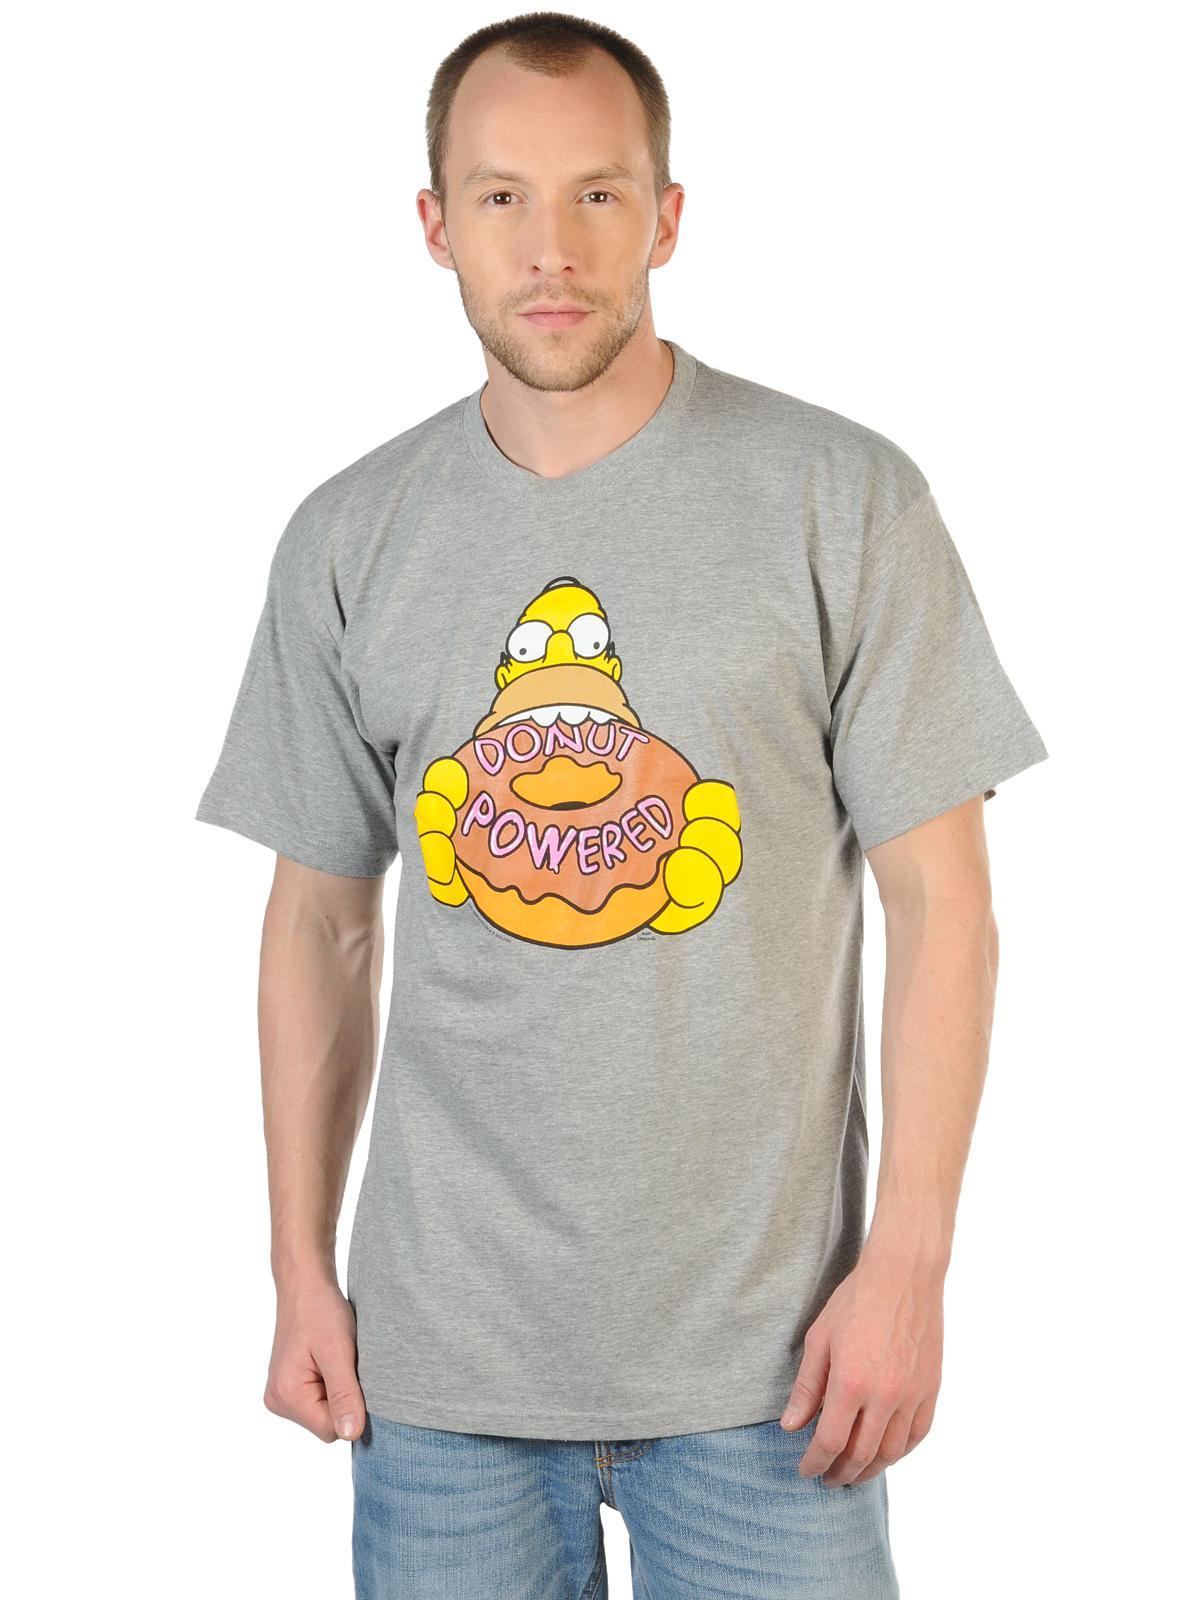 Foto The Simpsons Camiseta gris S